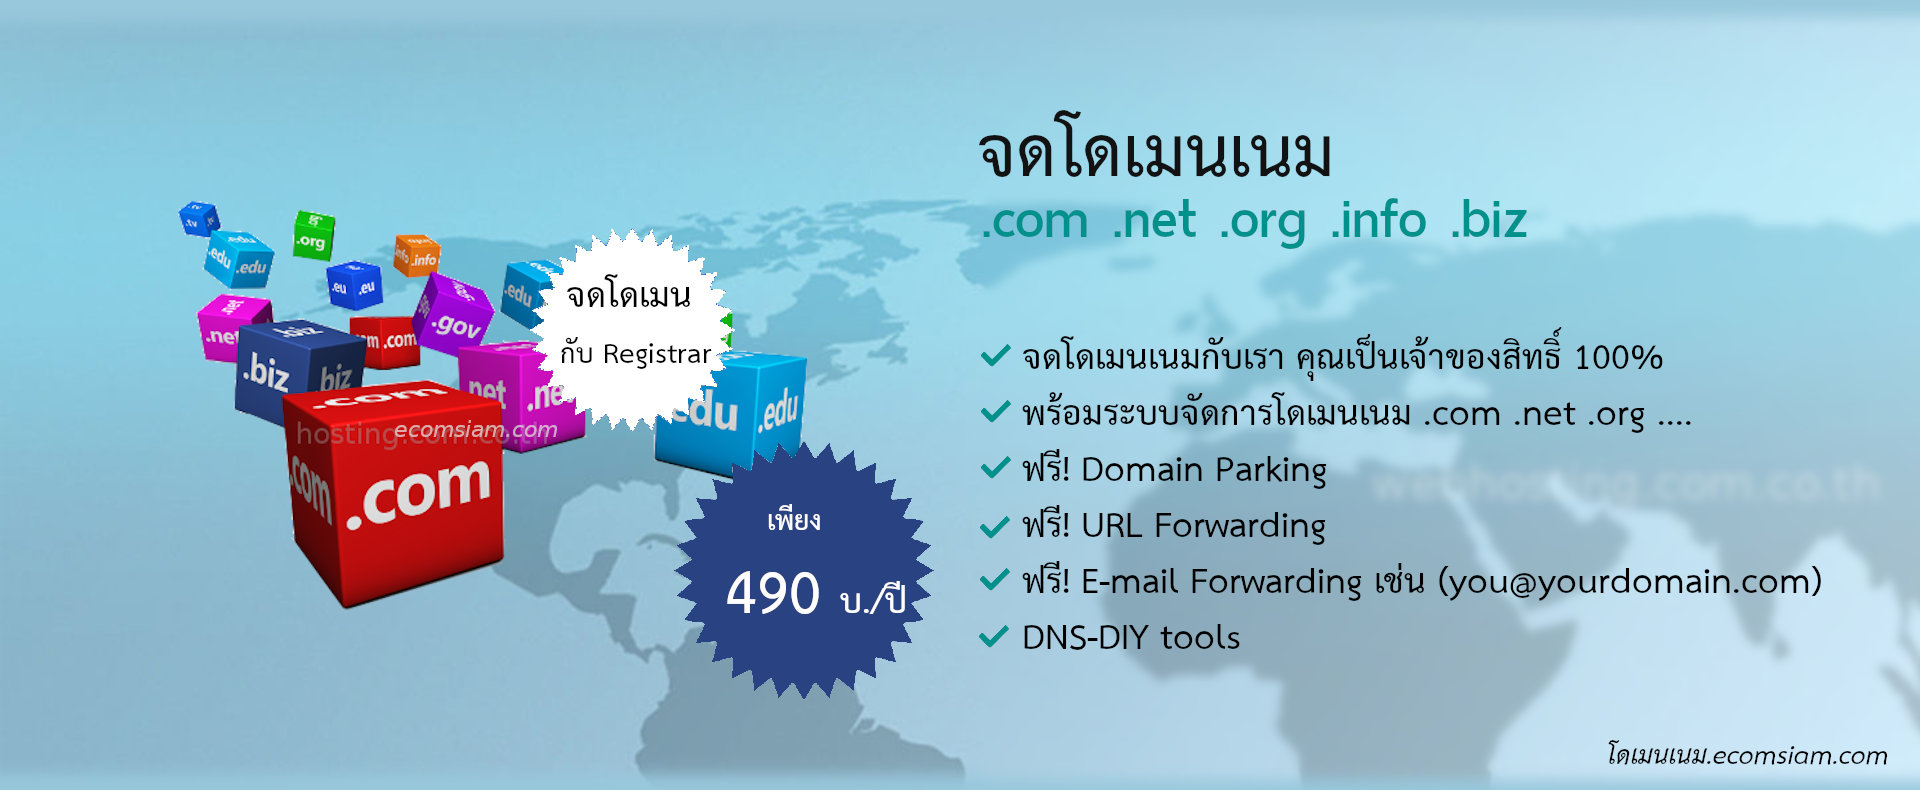 จดโดเมนเนม .com .net .org .info เพียง 490 บ./ปี จดโดเมน .biz เพียง 800 บ./ปี  จดโดเมนกับ Registrar จดโดเมนเนมกับเรา คุณเป็นเจ้าของสิทธิ์ 100% พร้อมระบบจัดการโดเมนเนม .com .net .org ....
ฟรี! Domain Parking /ฟรี! URL Forwarding /ฟรี! E-mail Forwarding เช่น (you@yourdomain.com) และ
DNS-DIY tools